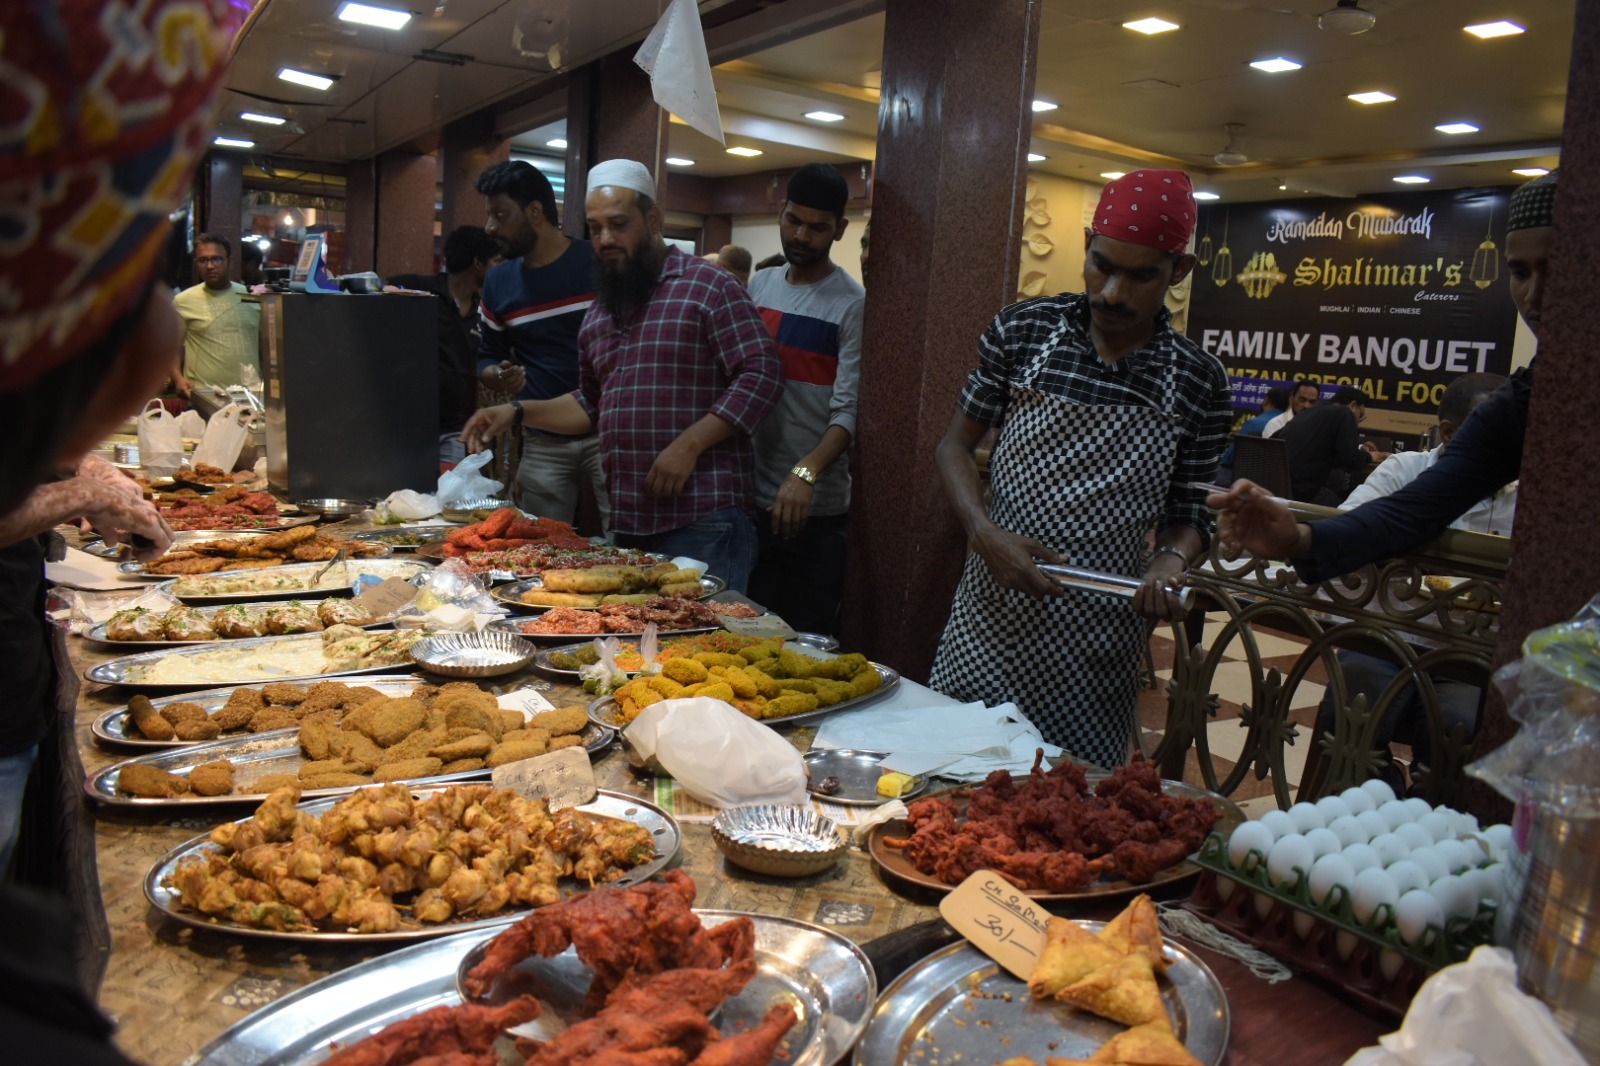 रमजान स्पेशल : 'शालिमार'च्या विशेष मांसाहारी, गोड पदार्थांना खवय्यांची पसंती